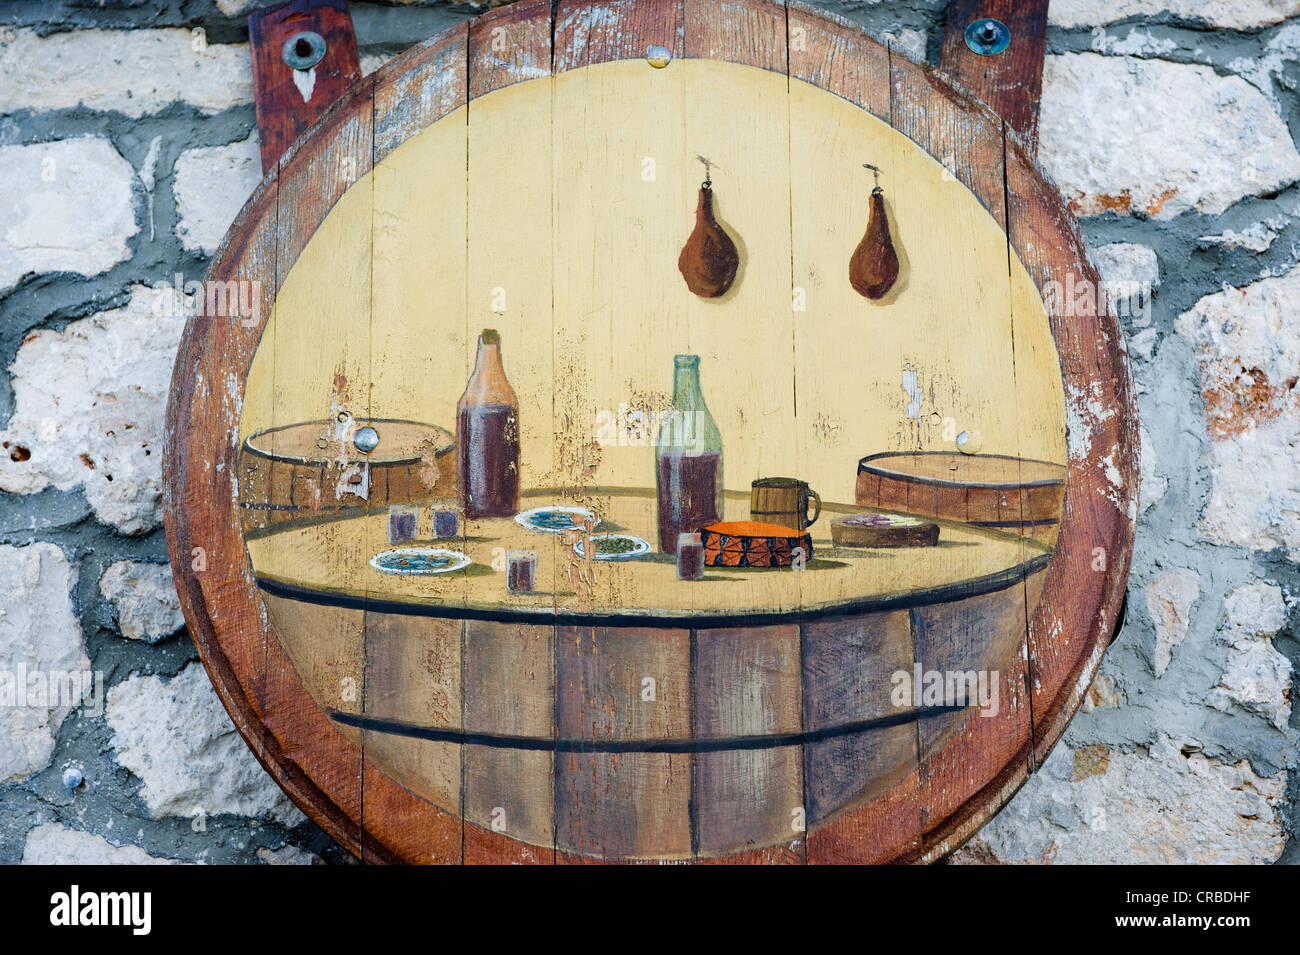 Inn sign, Konoba wine cellar, Primosten, Dalmatia, Croatia, Europe Stock Photo